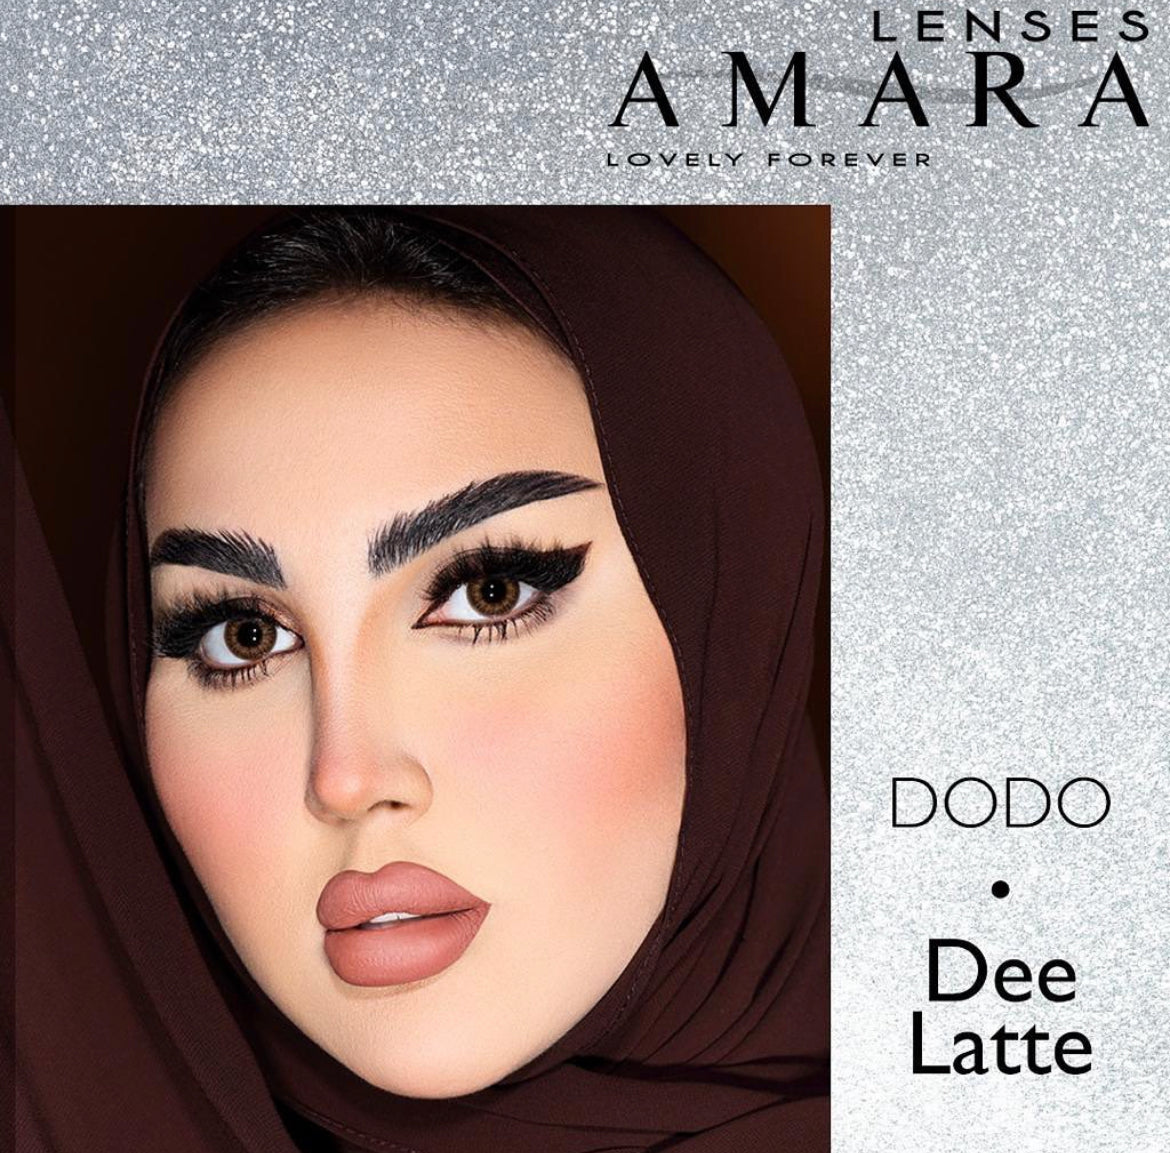 Amara Dee Latte